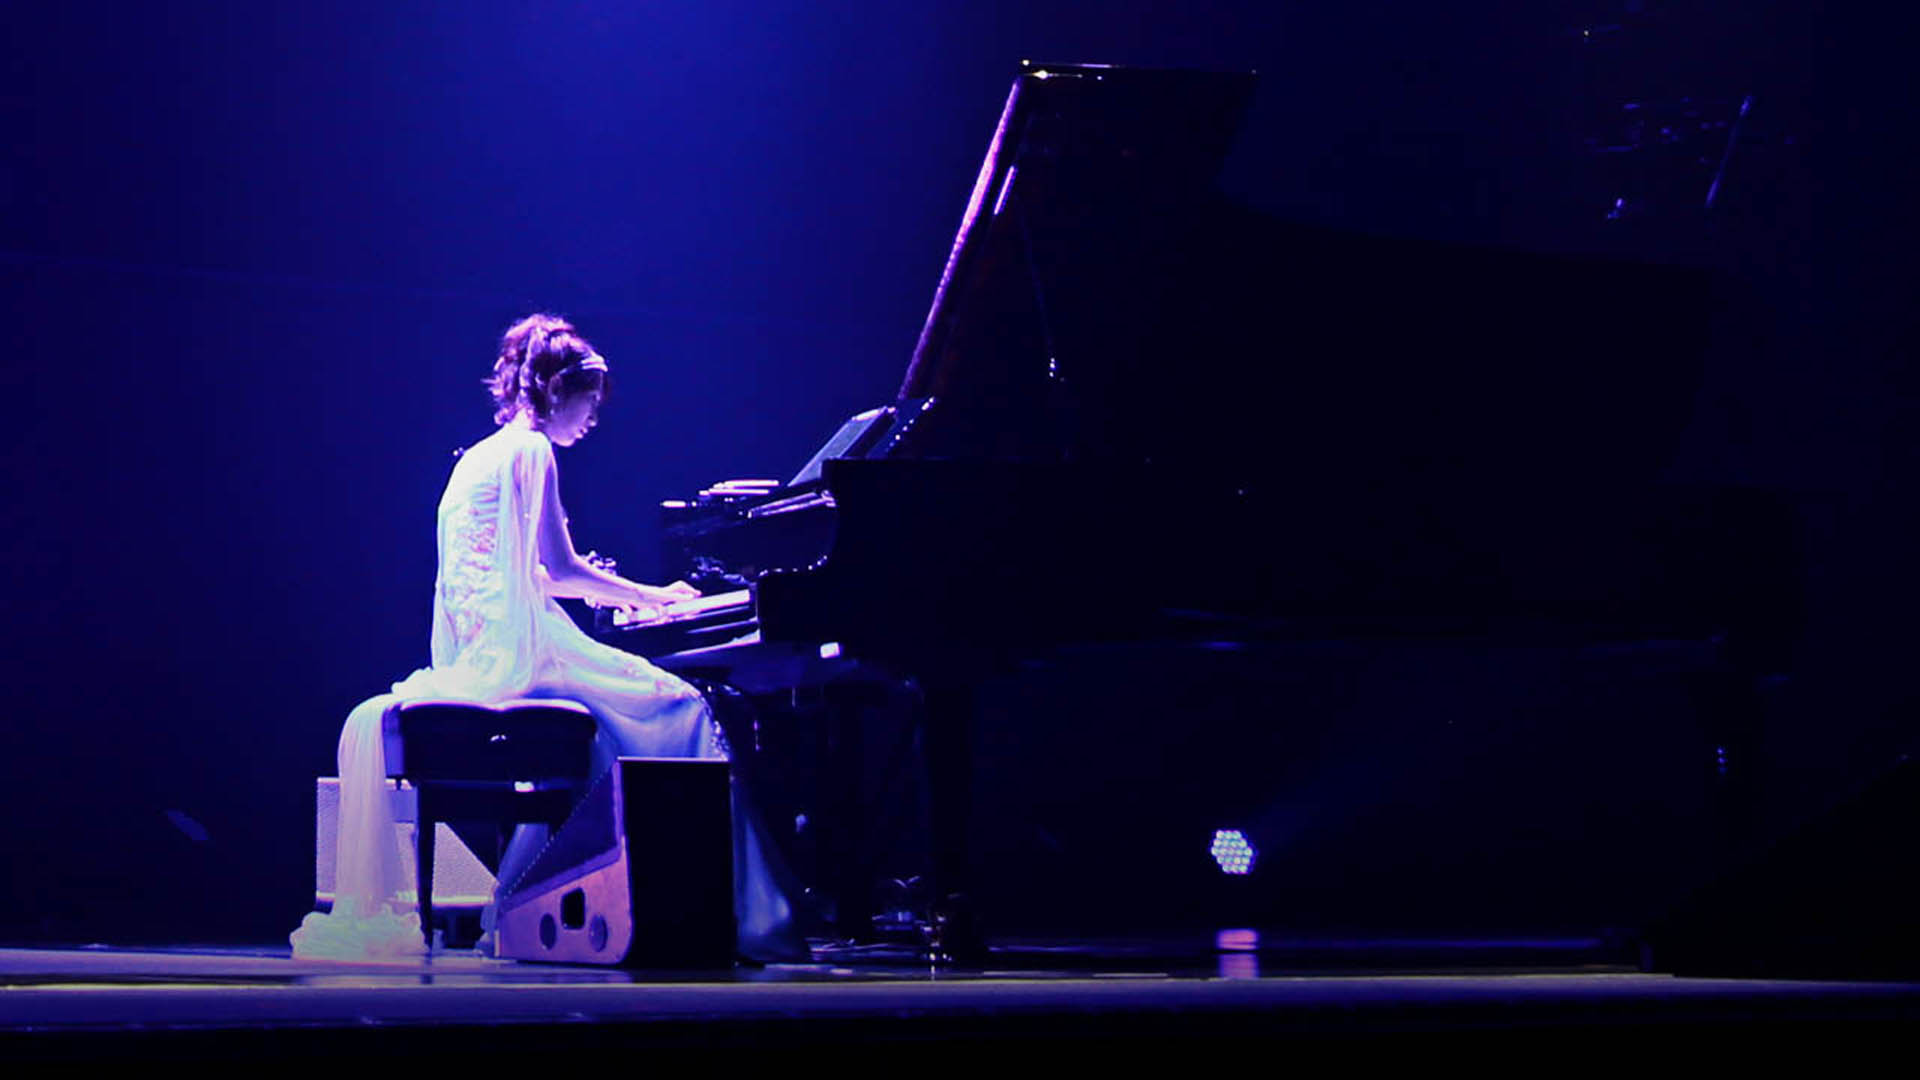 Keiko spiller klaver